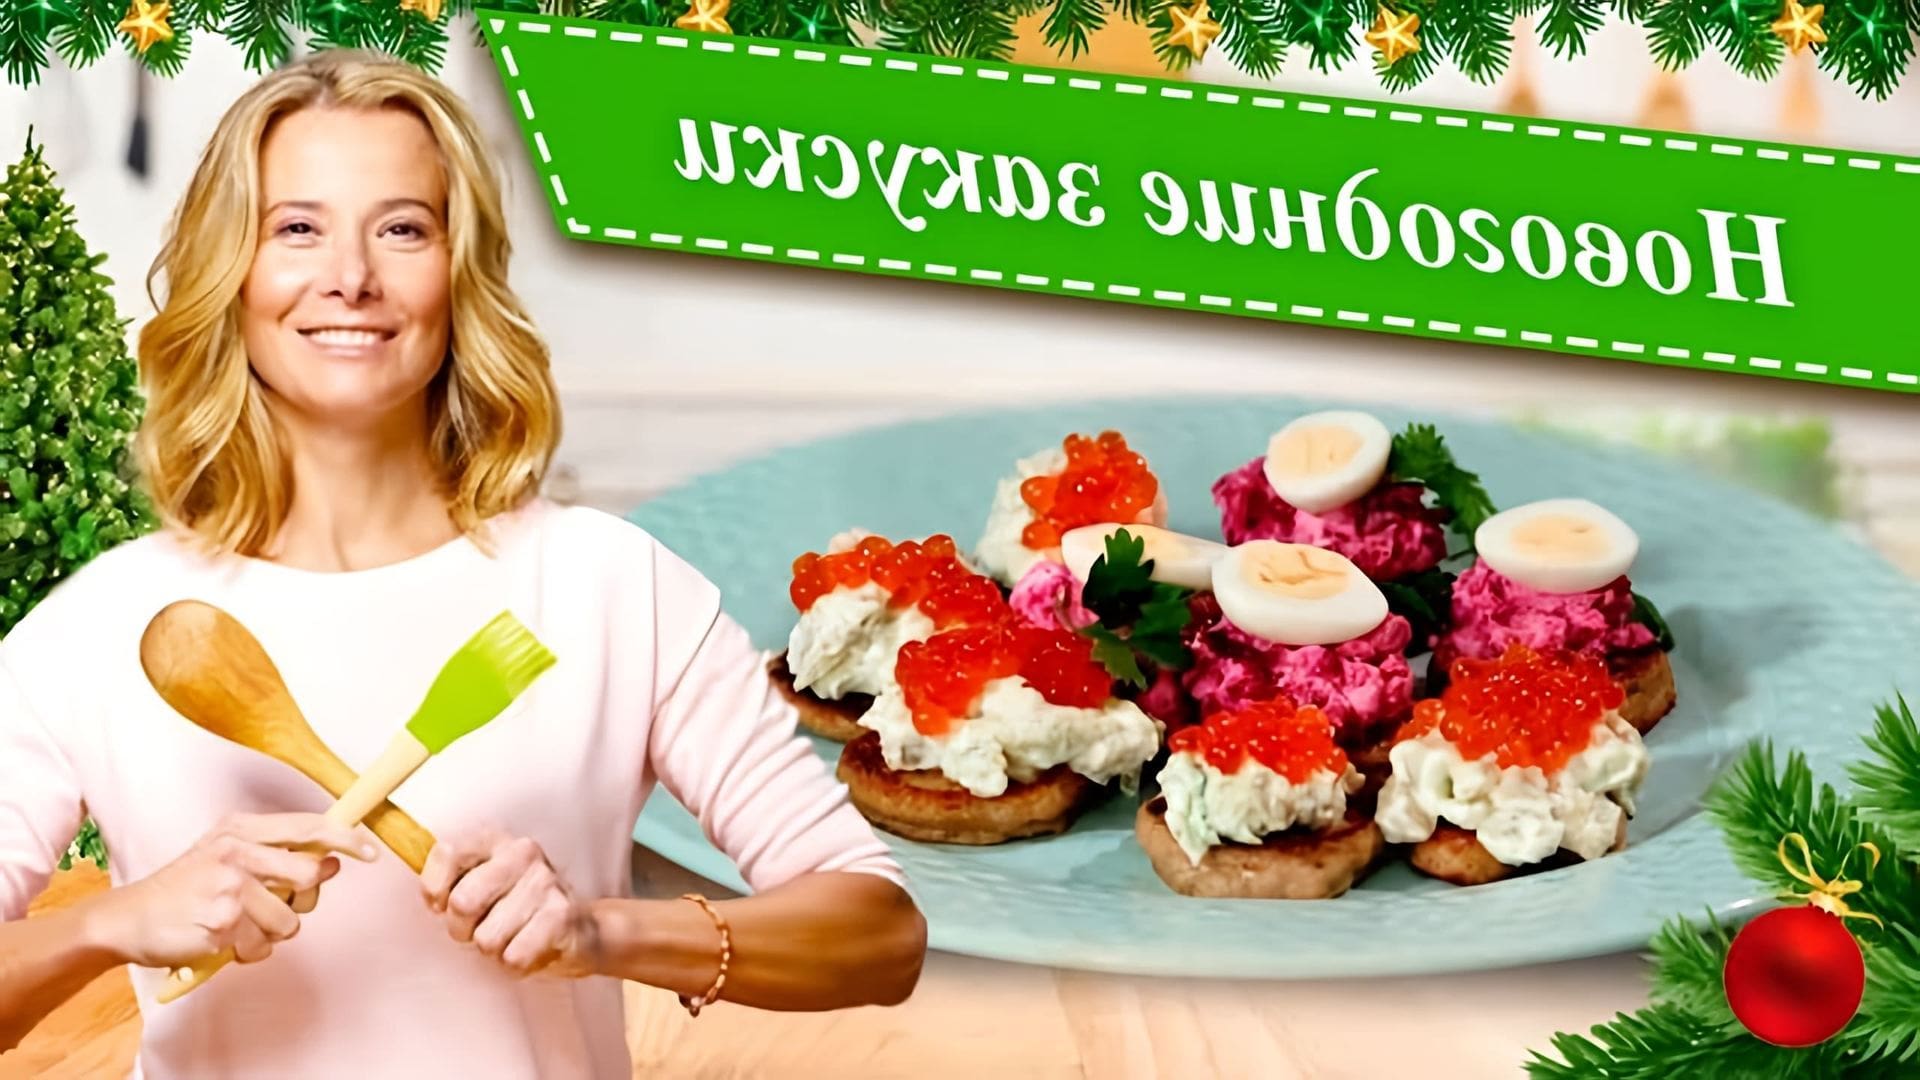 Видео рассматривает рецепты закусок и закусок, которые просты и вкусны для новогоднего стола